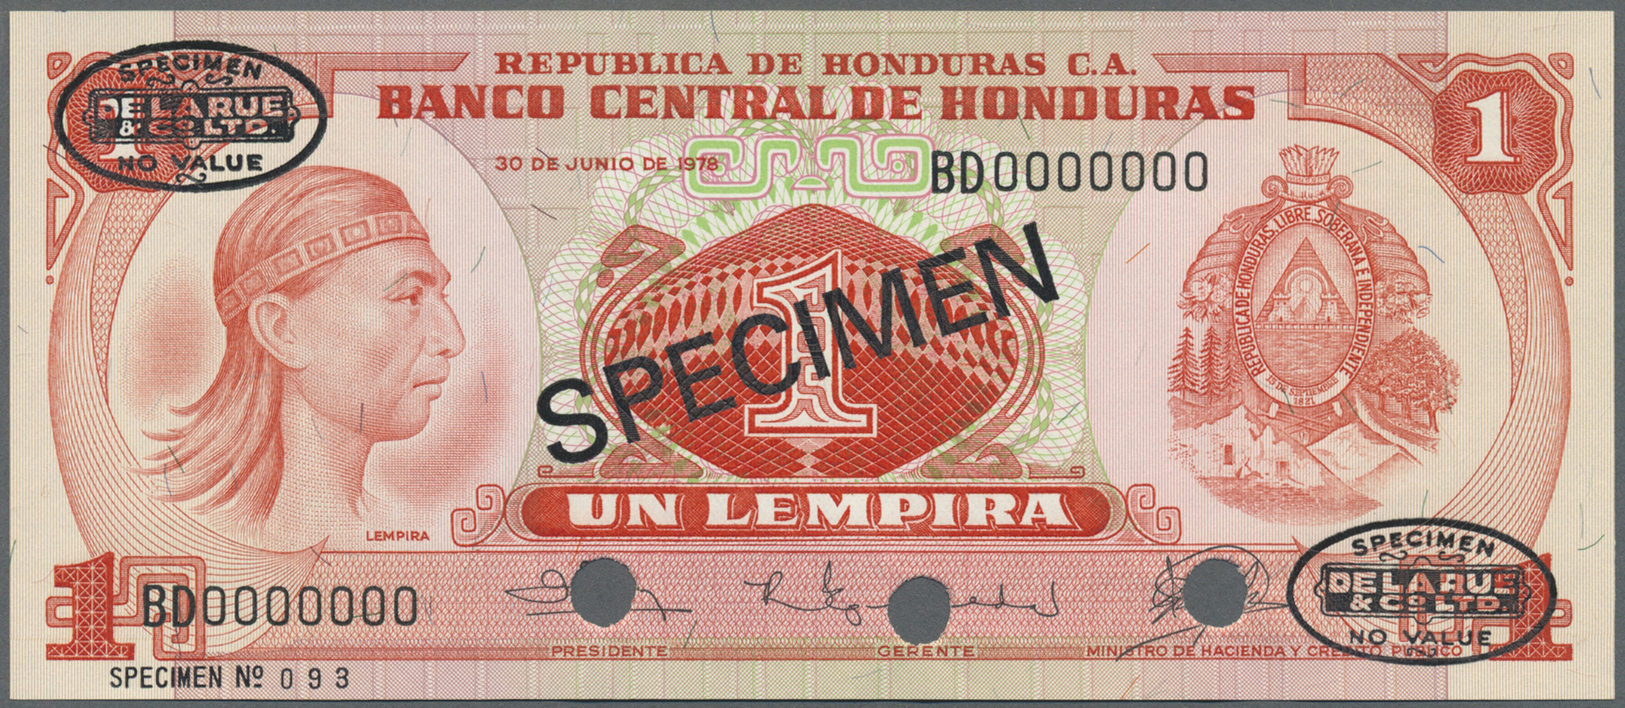 00993 Honduras: 1 Lempira 1978 Specimen P. 62s In Condition: AUNC. - Honduras